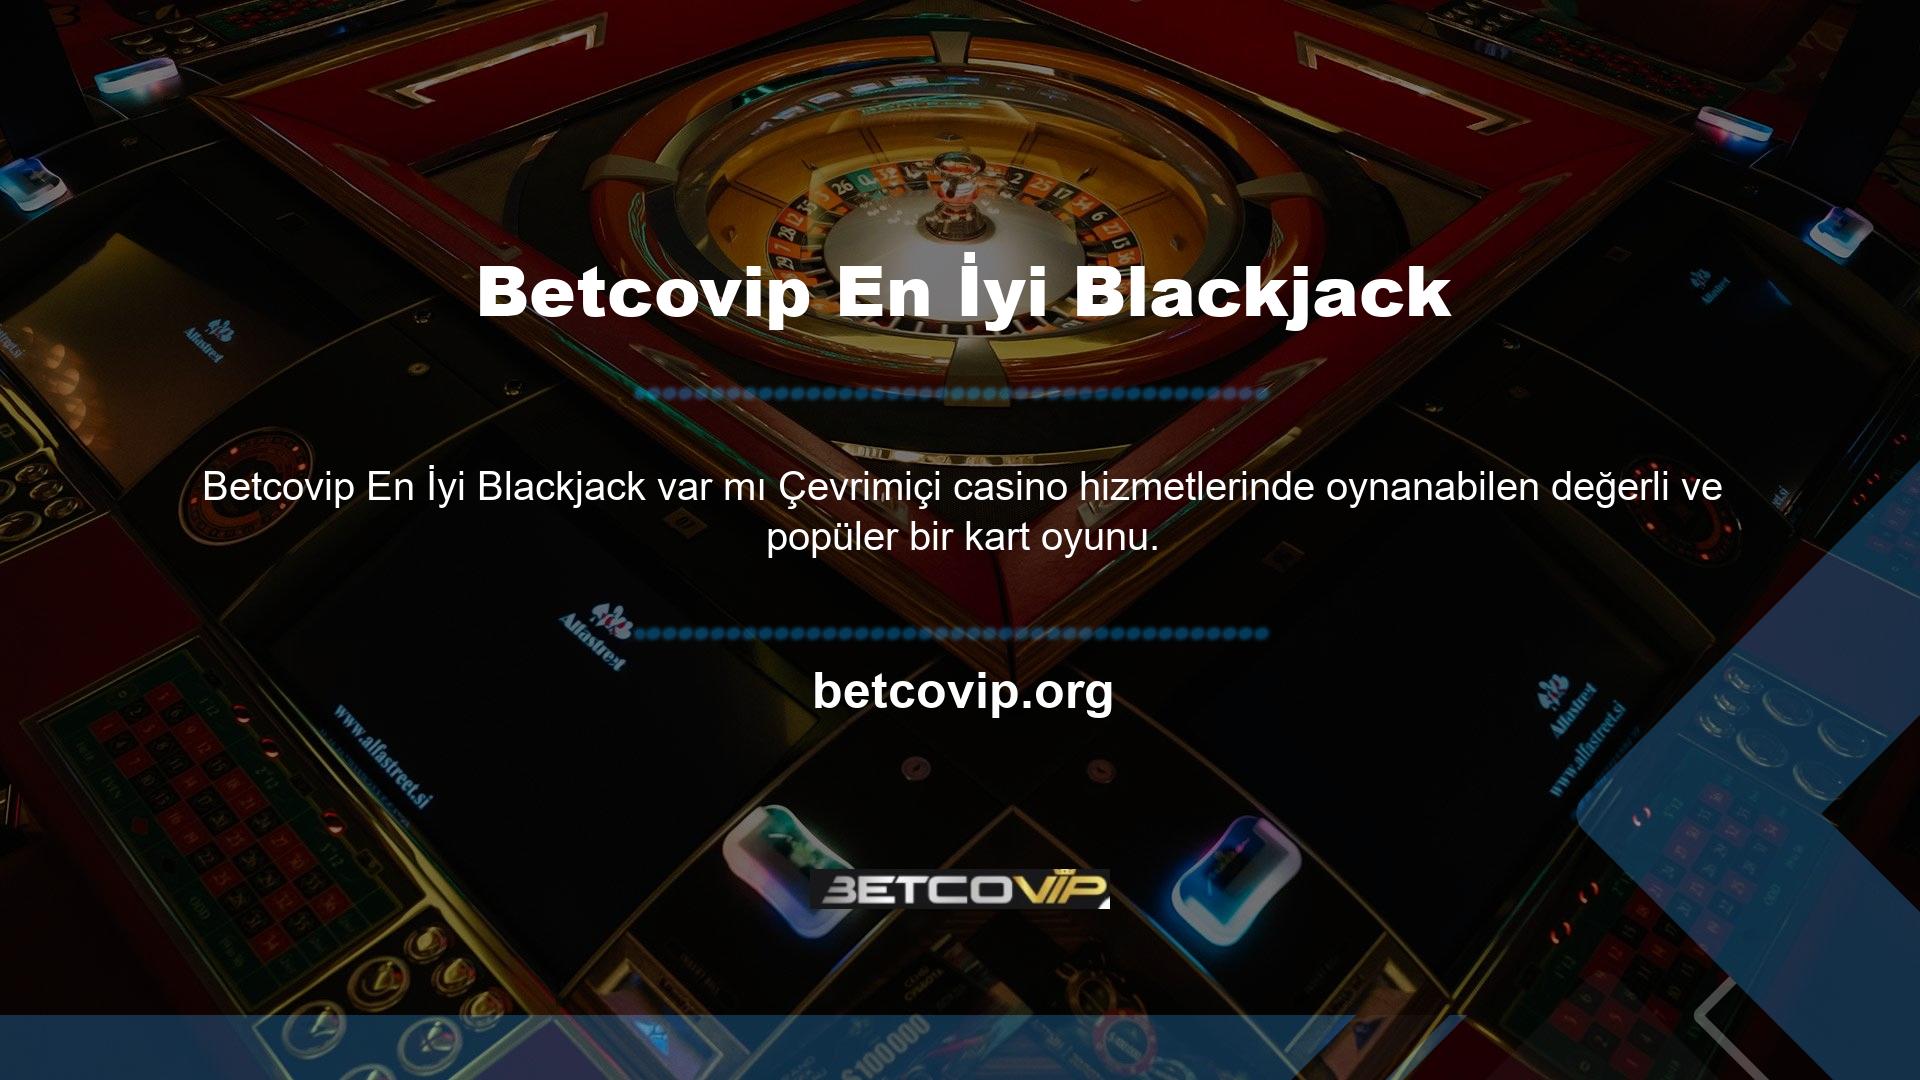 Blackjack, en iyi 52 kartlı masa oyunlarından biridir